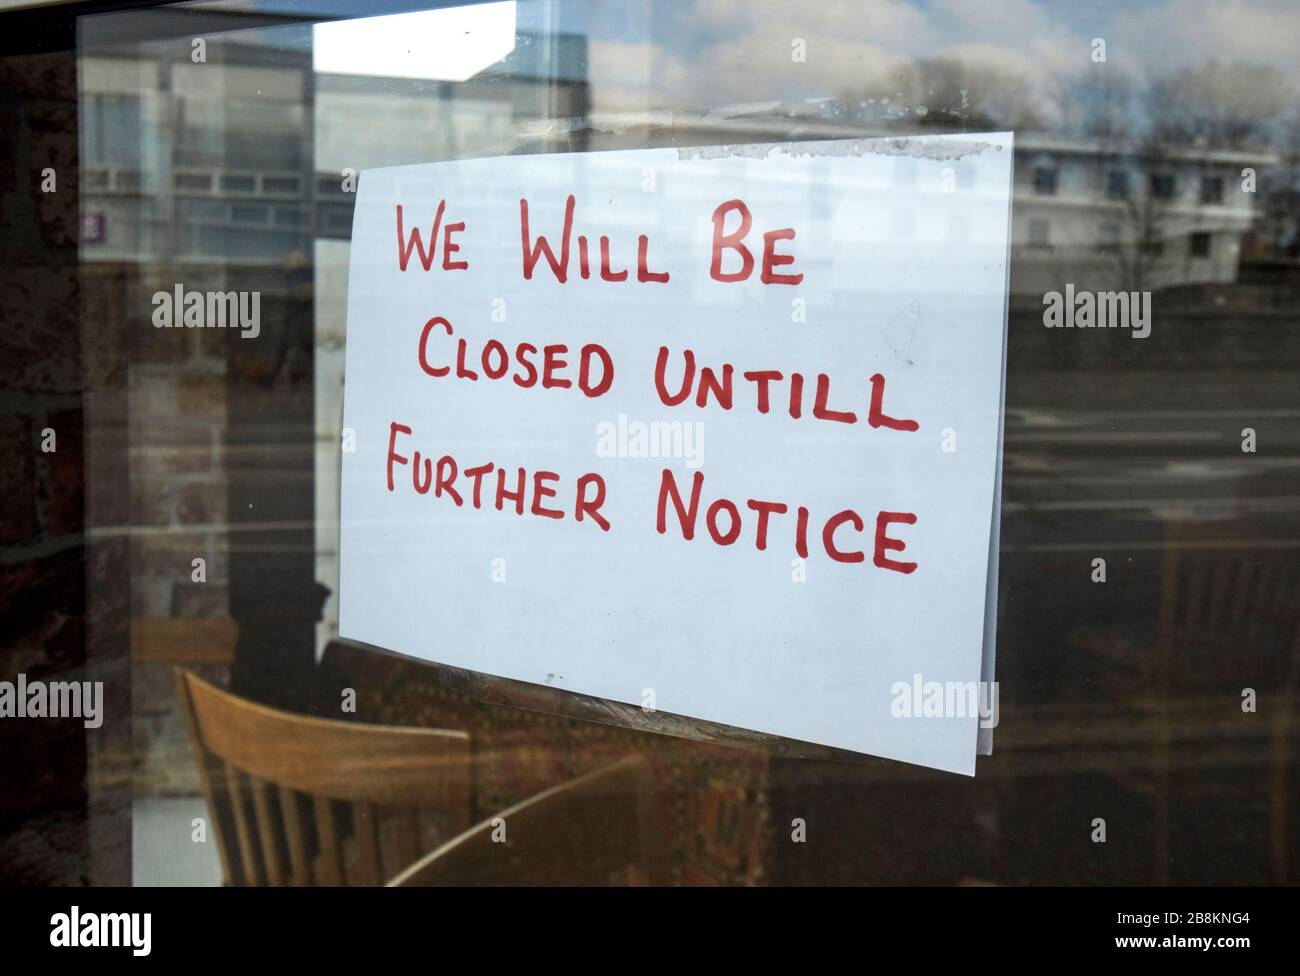 nous serons fermés à la main jusqu'à nouvel ordre signe dans la fenêtre d'un restaurant de café en raison de covid-19 à la glengormley newtownabbatibatibatibatibatibatibatibatibatibatiale nord irlande uk Banque D'Images